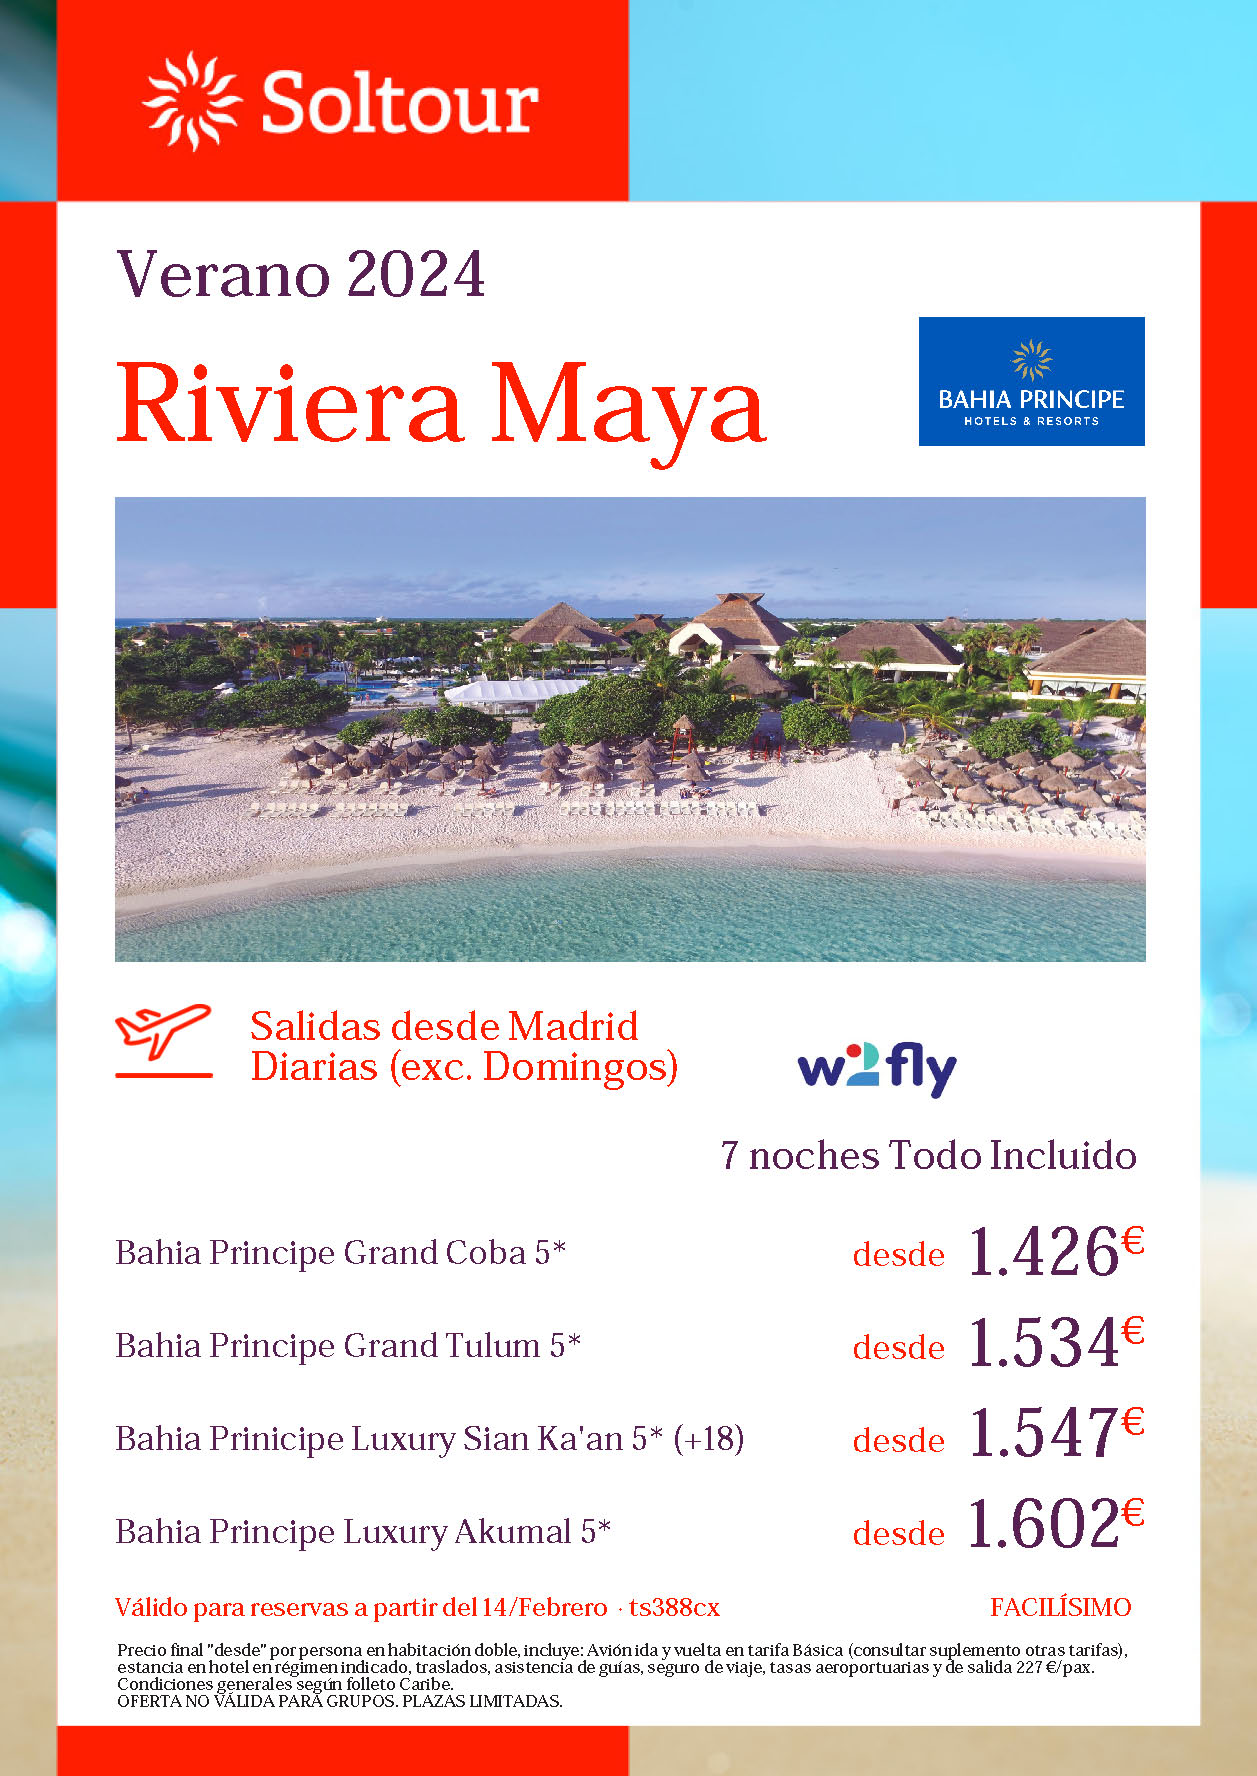 Oferta Soltour Estancia en Riviera Maya Mexico 9 dias Hotel 5 estrellas Todo Incluido salidas Verano 2024 vuelo directo desde Madrid